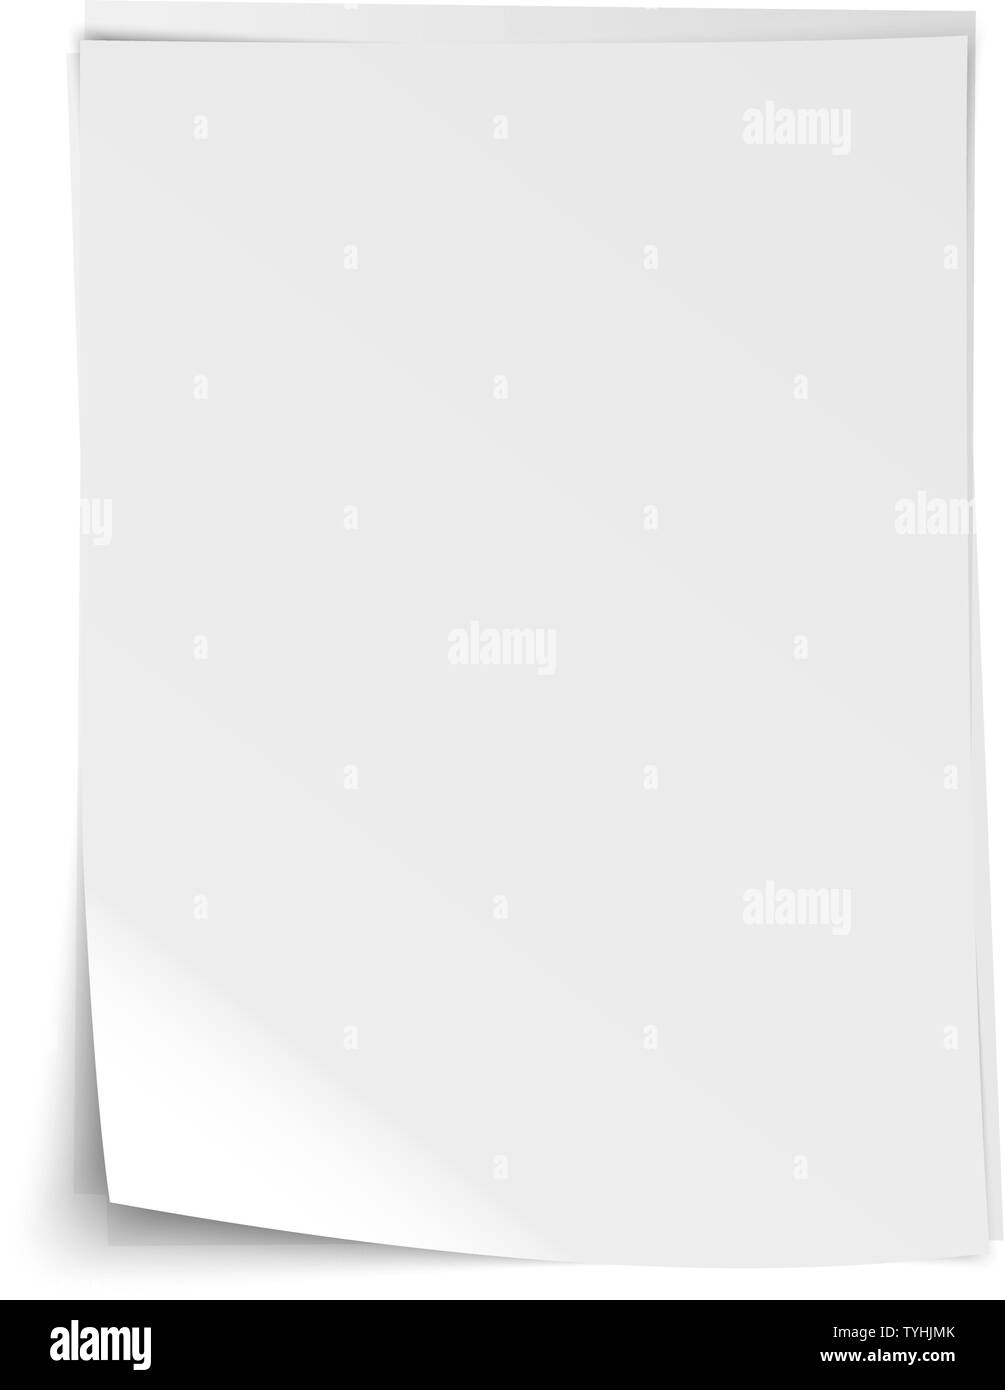 Pile de feuilles blanches réaliste vide de papier d'écriture avec coin plié et les ombres vector illustration Illustration de Vecteur